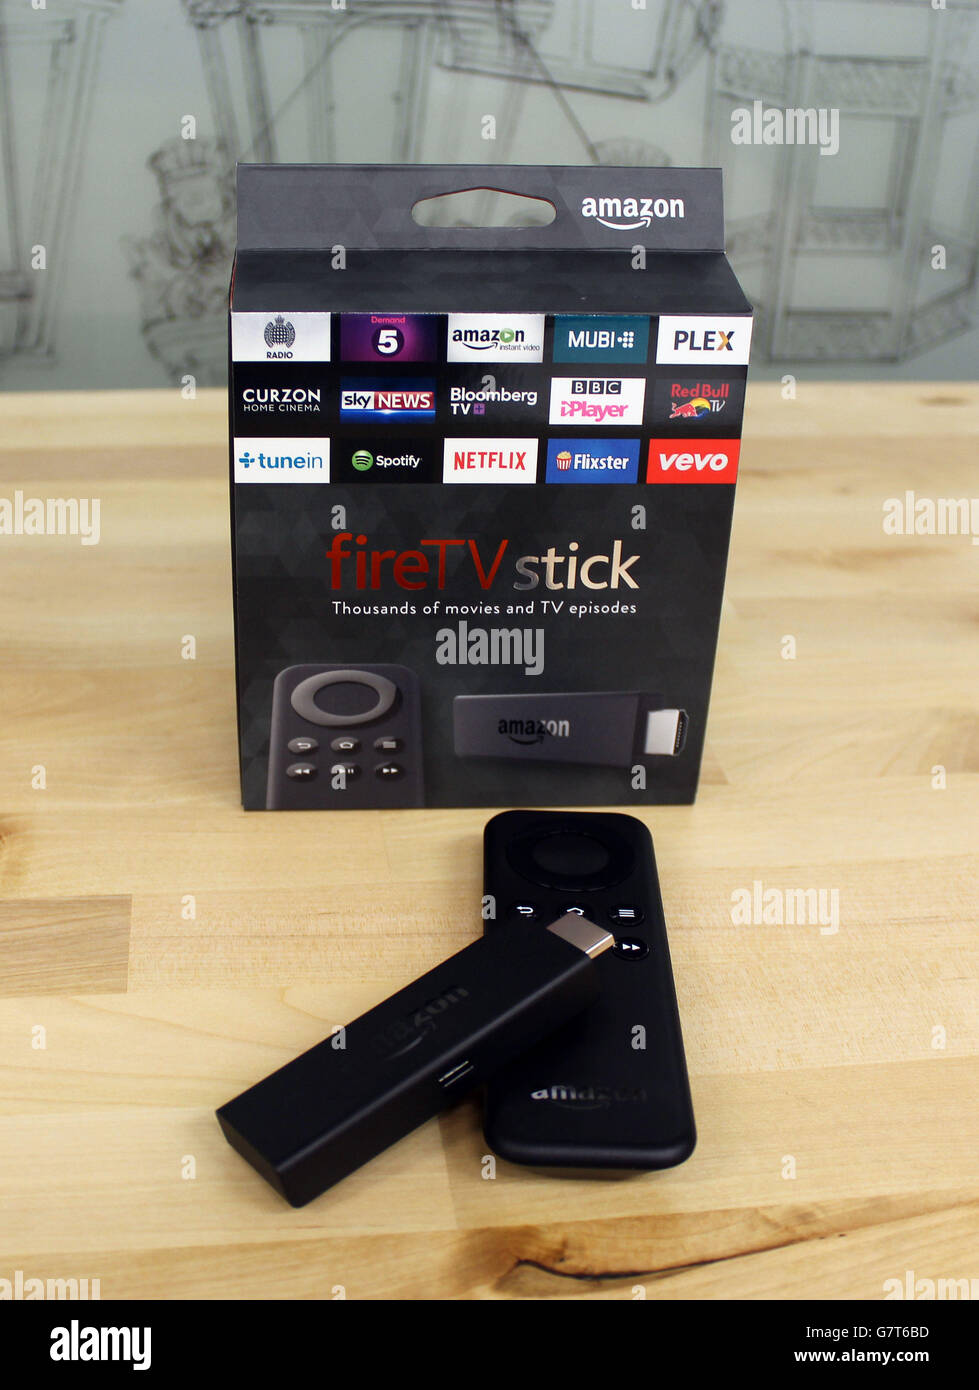 La nouvelle Amazon Fire TV Stick, une version portable de son boîtier de  diffusion, de la taille d'une clé USB, se branche directement sur le port  HDMI d'un téléviseur, disponible à la